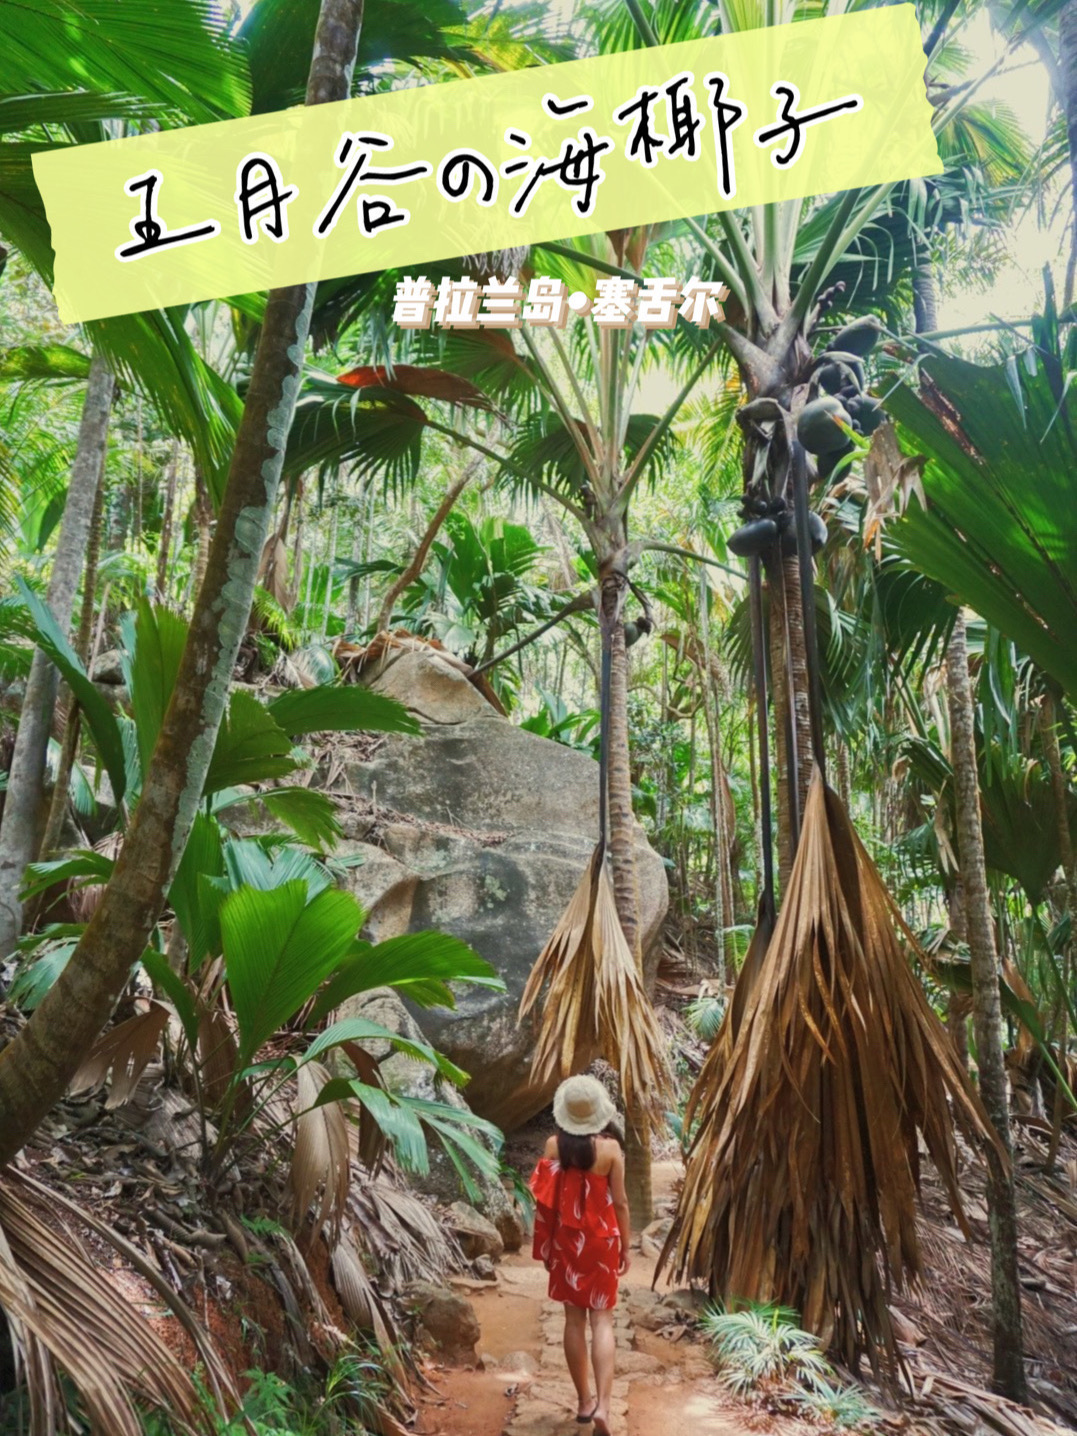 屁股椰子——世界上长相最令人脸红的奇特植物‼️  我发四‼️这一定是世界上长相最令人脸红的奇特植物—